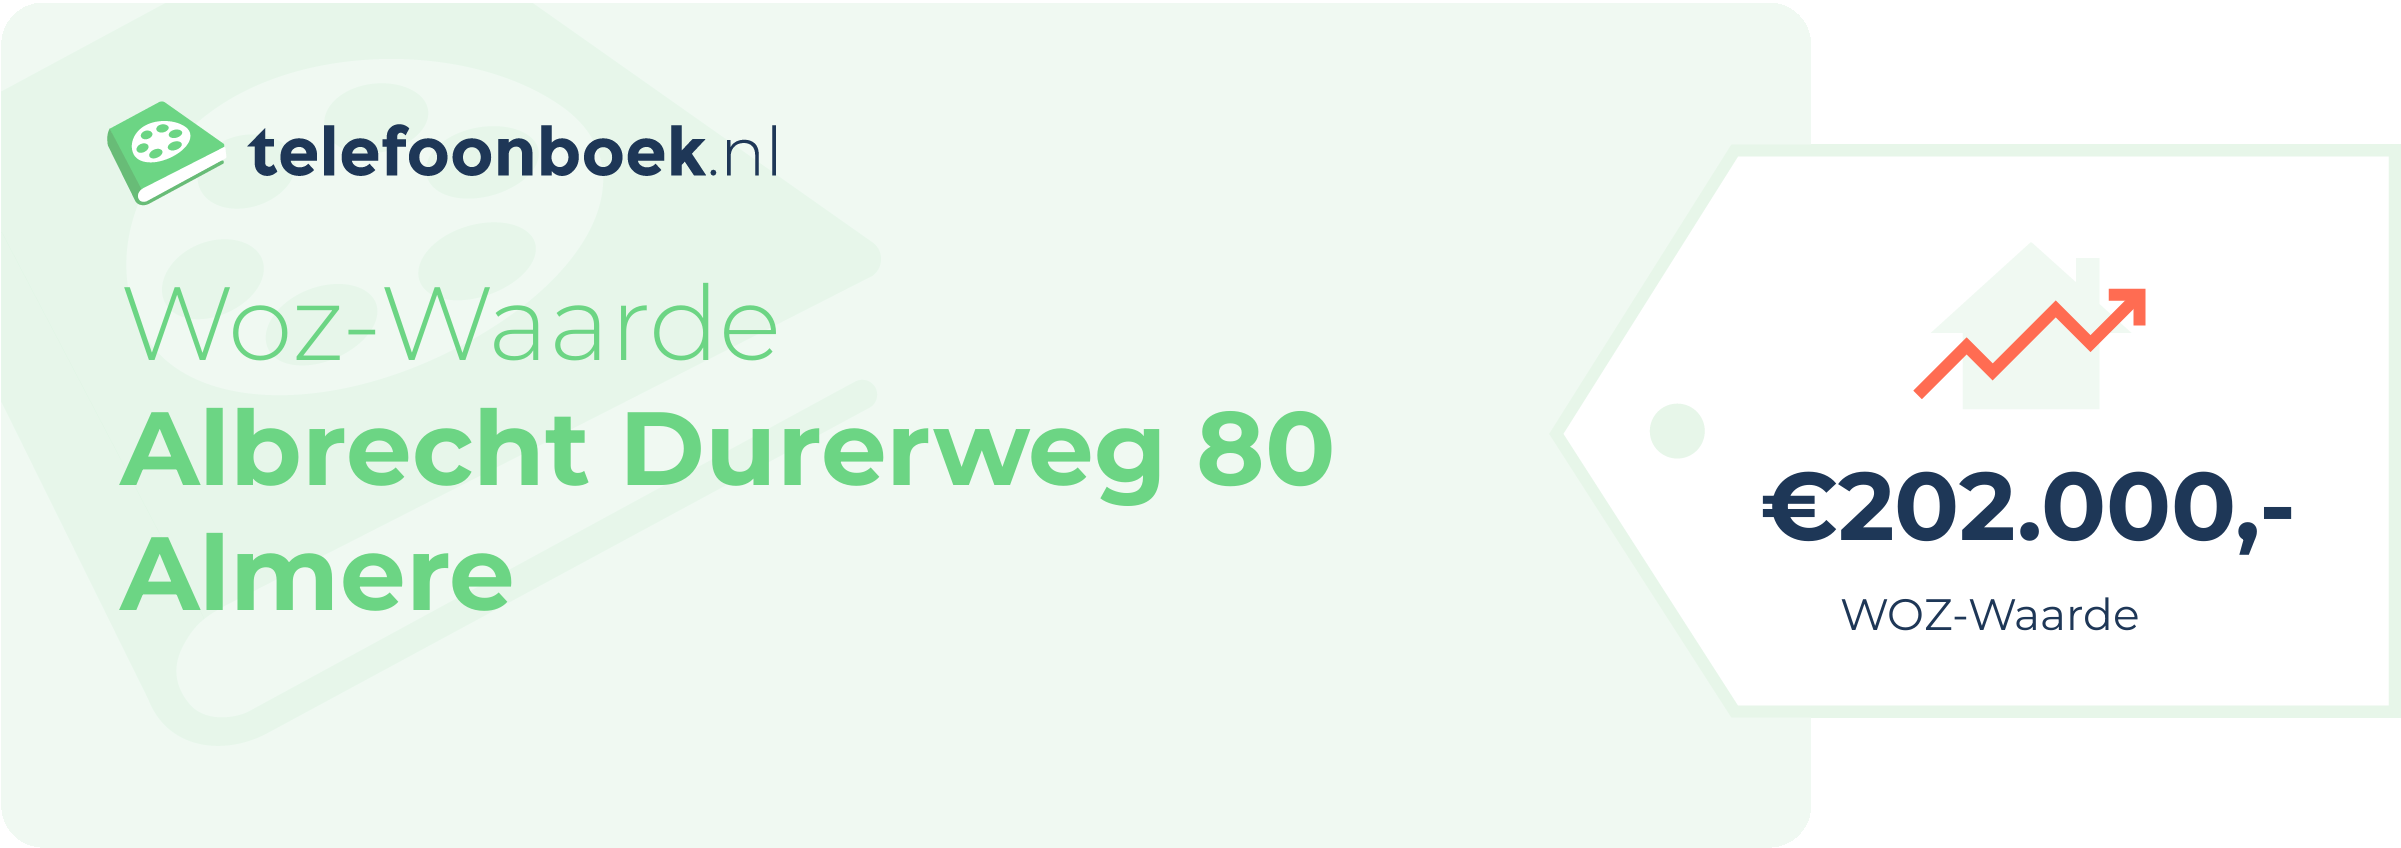 WOZ-waarde Albrecht Durerweg 80 Almere